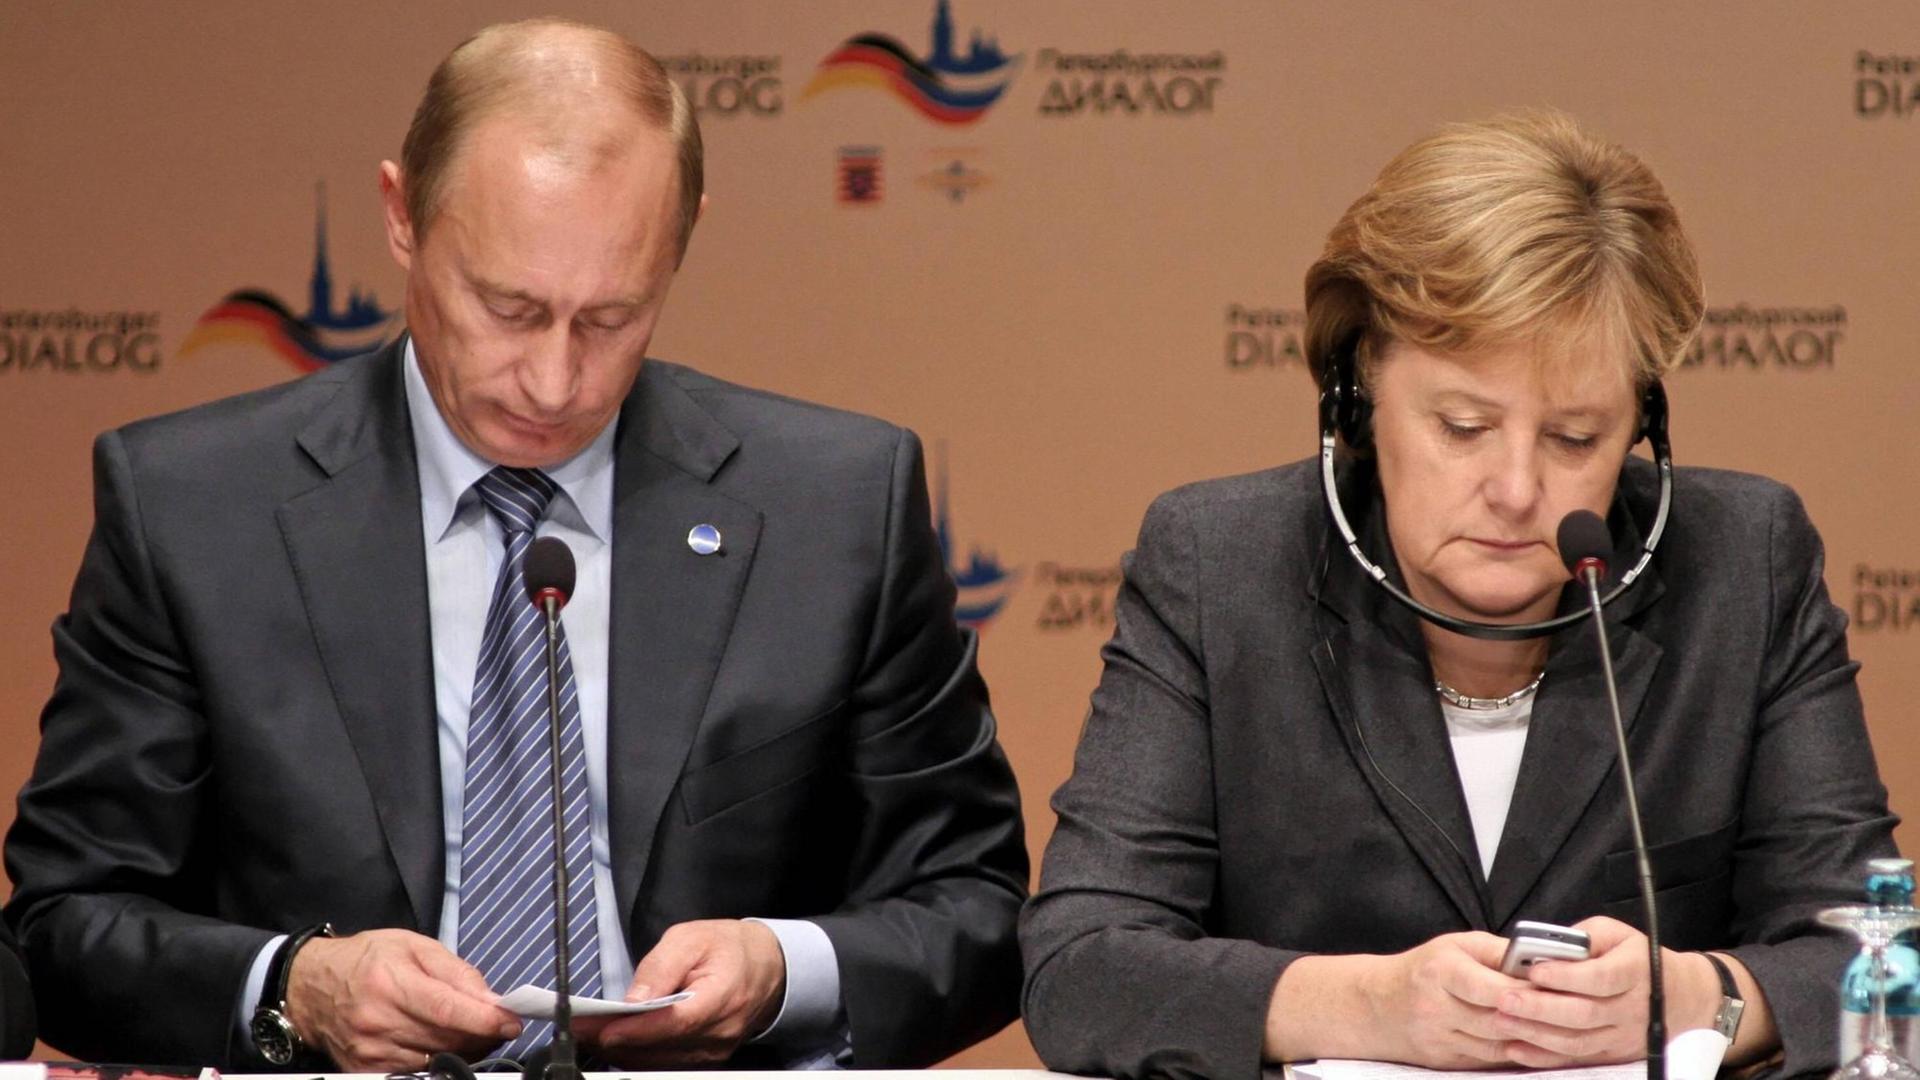 Russlands Präsident Putin und Bundeskanzlerin Merkel bei einer Pressekonferenz anlässlich des Petersburger Dialogs im Jahr 2007. Merkel schaut auf ihr Handy, Putin auf einen Zettel.